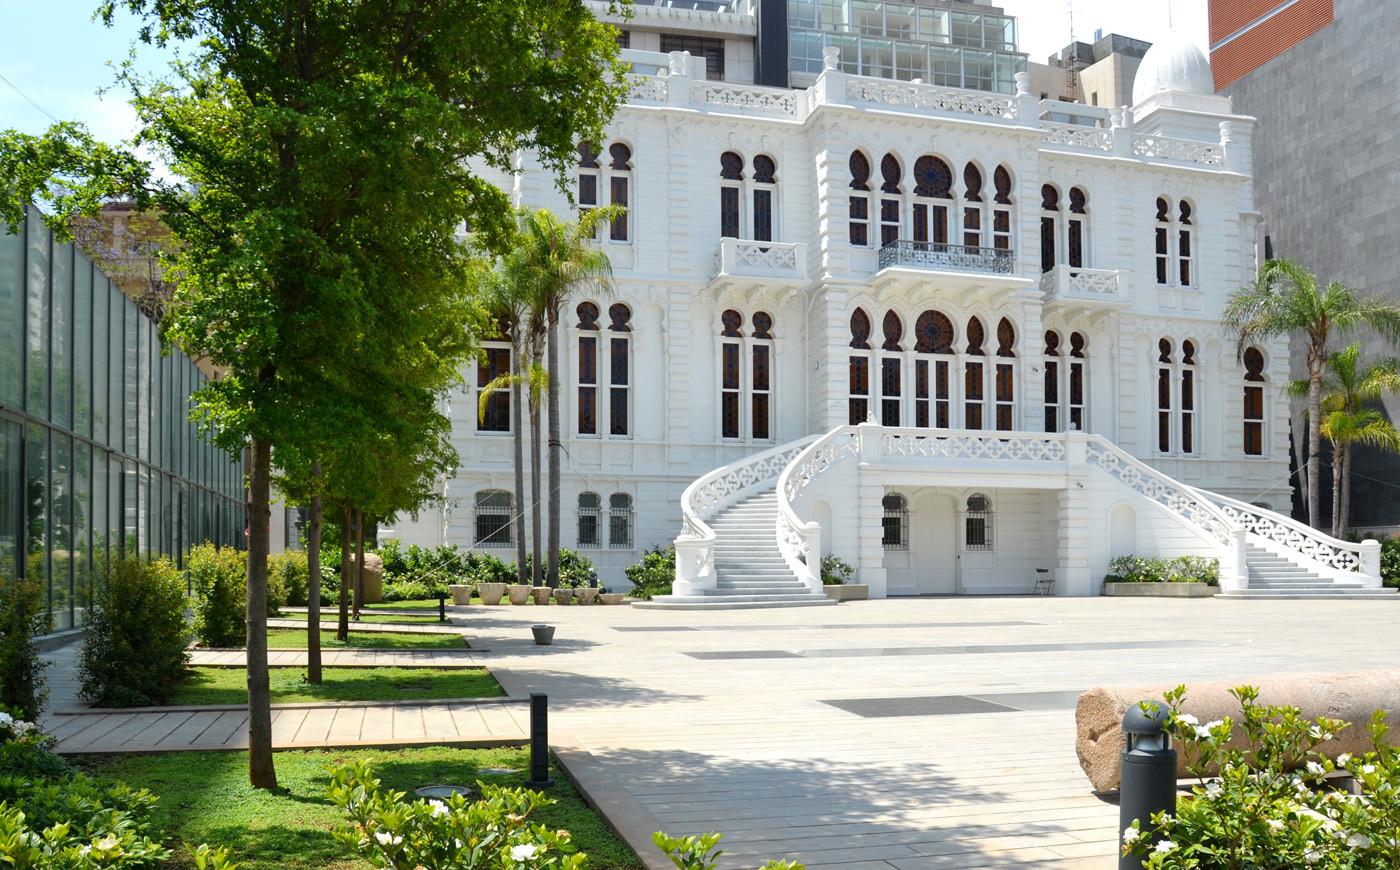 Николас Сурсак построил свой дворец в 1910 году, где разместил собранную коллекцию археологических древностей. Его можно посещать ежедневно с 10:00 до 13:00 и с 16:00 до 19:00 бесплатно. После смерти владельца в 1952 году дворец был передан в муниципалитет Бейрута, чтобы стать музеем современного искусства, как упомянуто в завещании. Одним из условий было то, что мэр Бейрута будет руководителем музея.